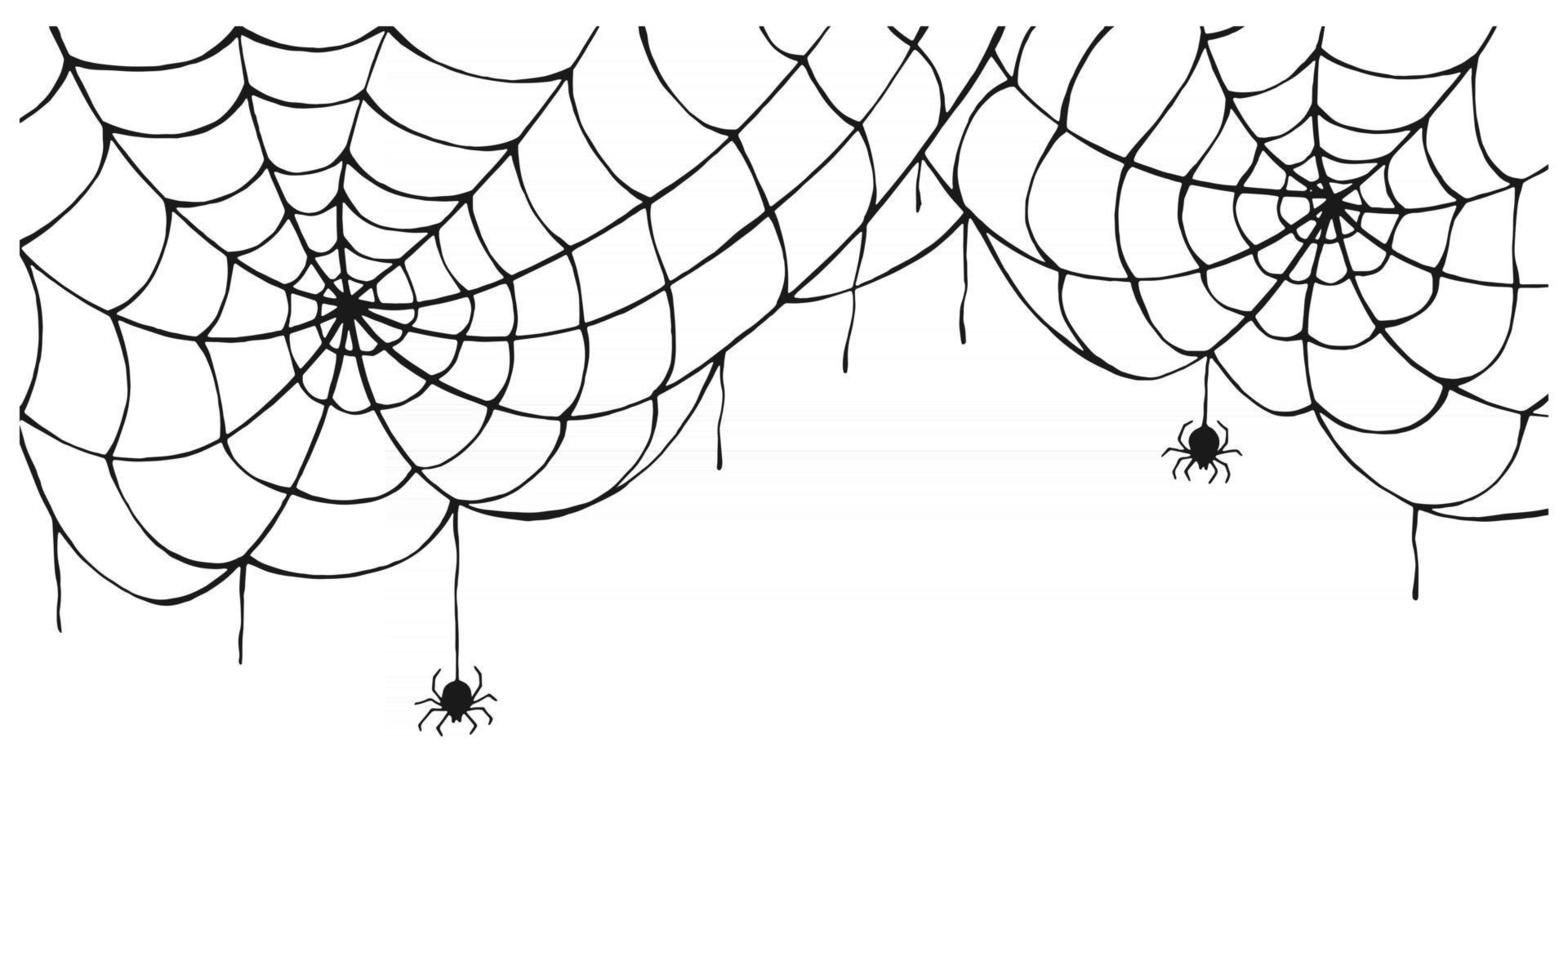 spinnenweb achtergrond. eng spinnenweb met griezelige spin, geïsoleerd op een witte achtergrond. hand getekend. halloween decor, netto textuur tattoo vector ontwerpsjabloon.